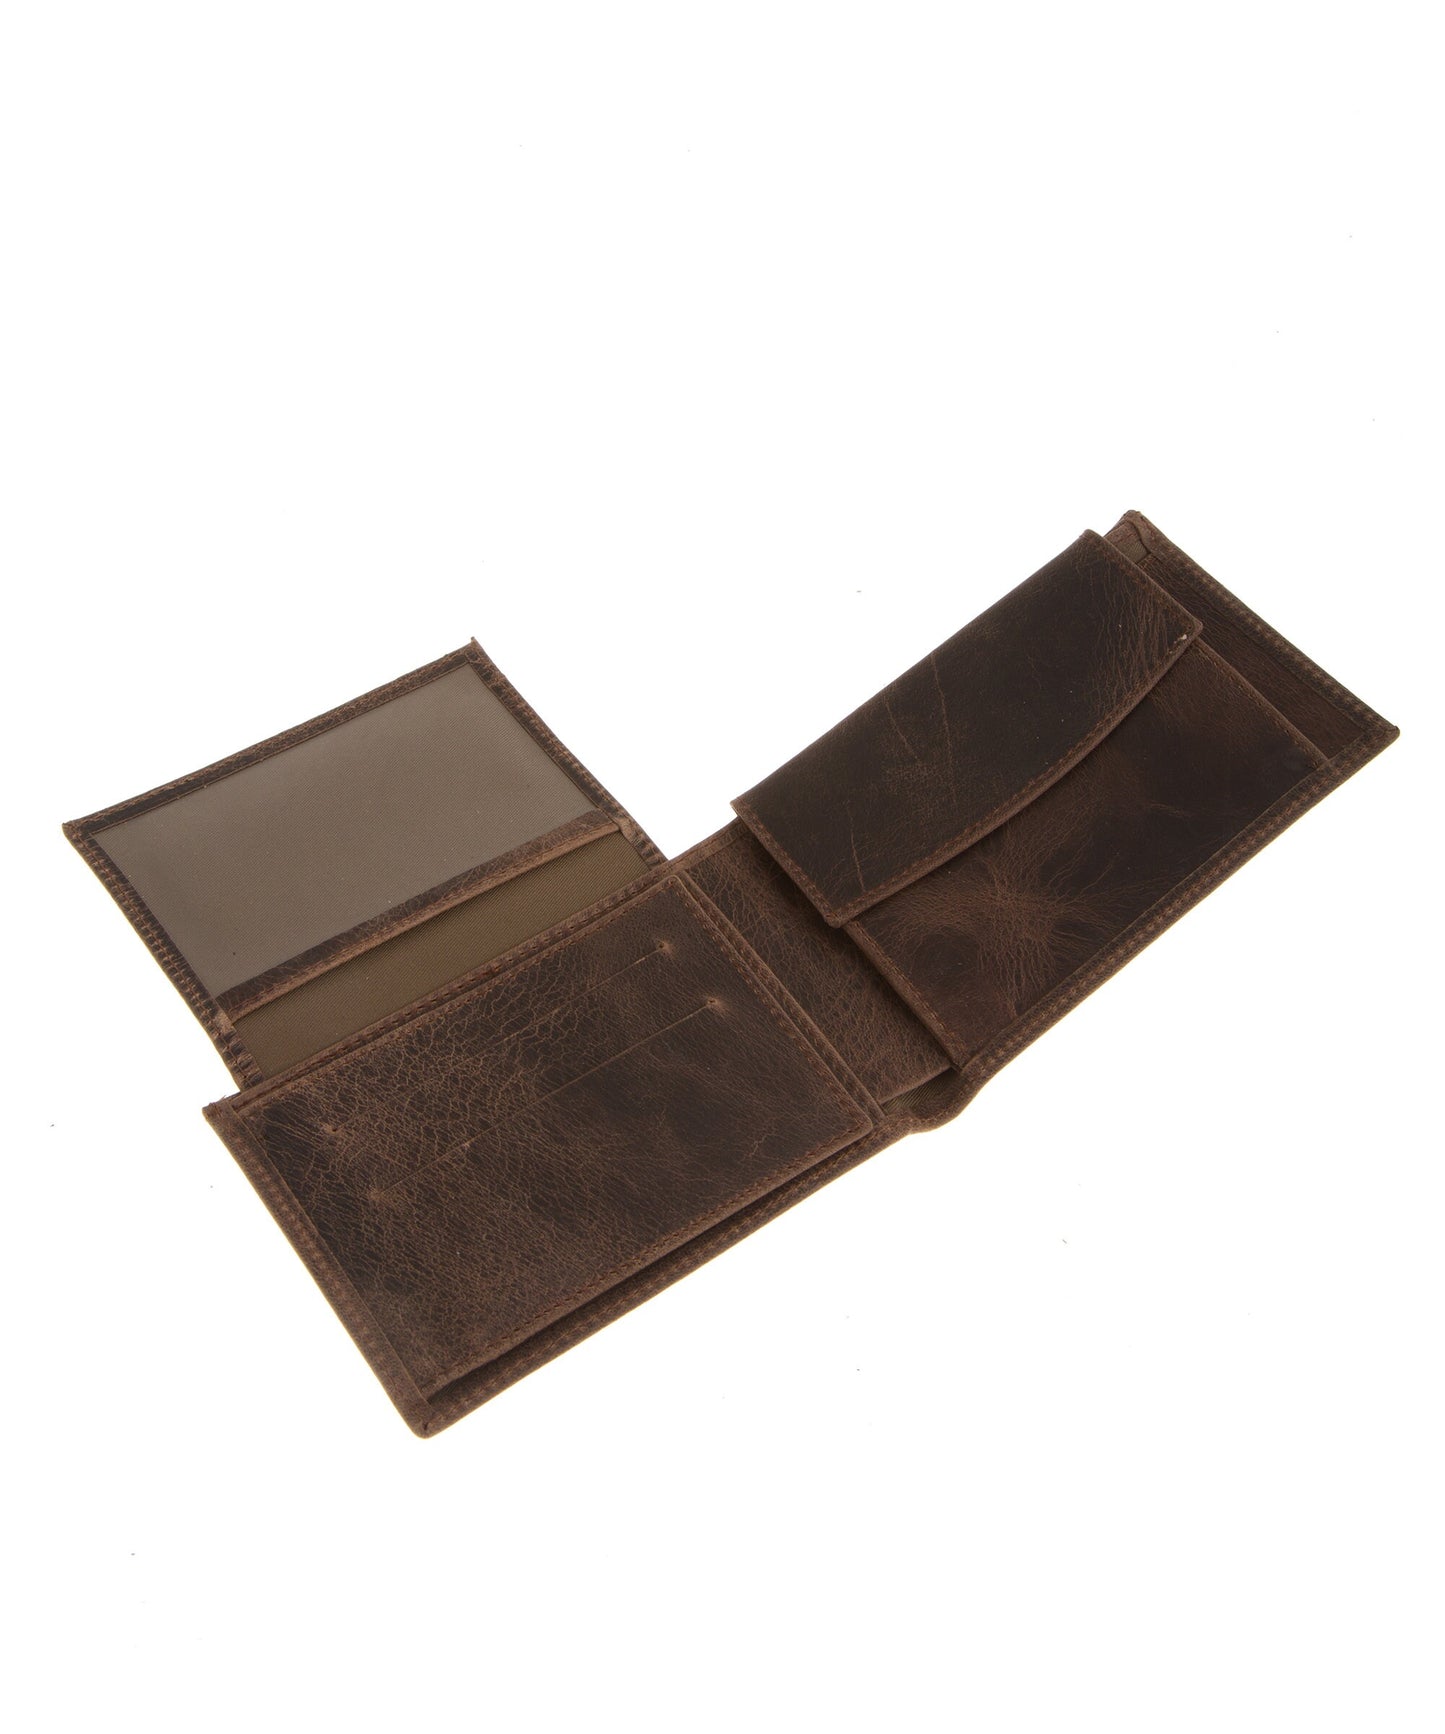 Leather wallet mens handmade, Full grain leather wallet mens, Bifold leather wallet, Waxed brown leather wallet, Small leather wallet